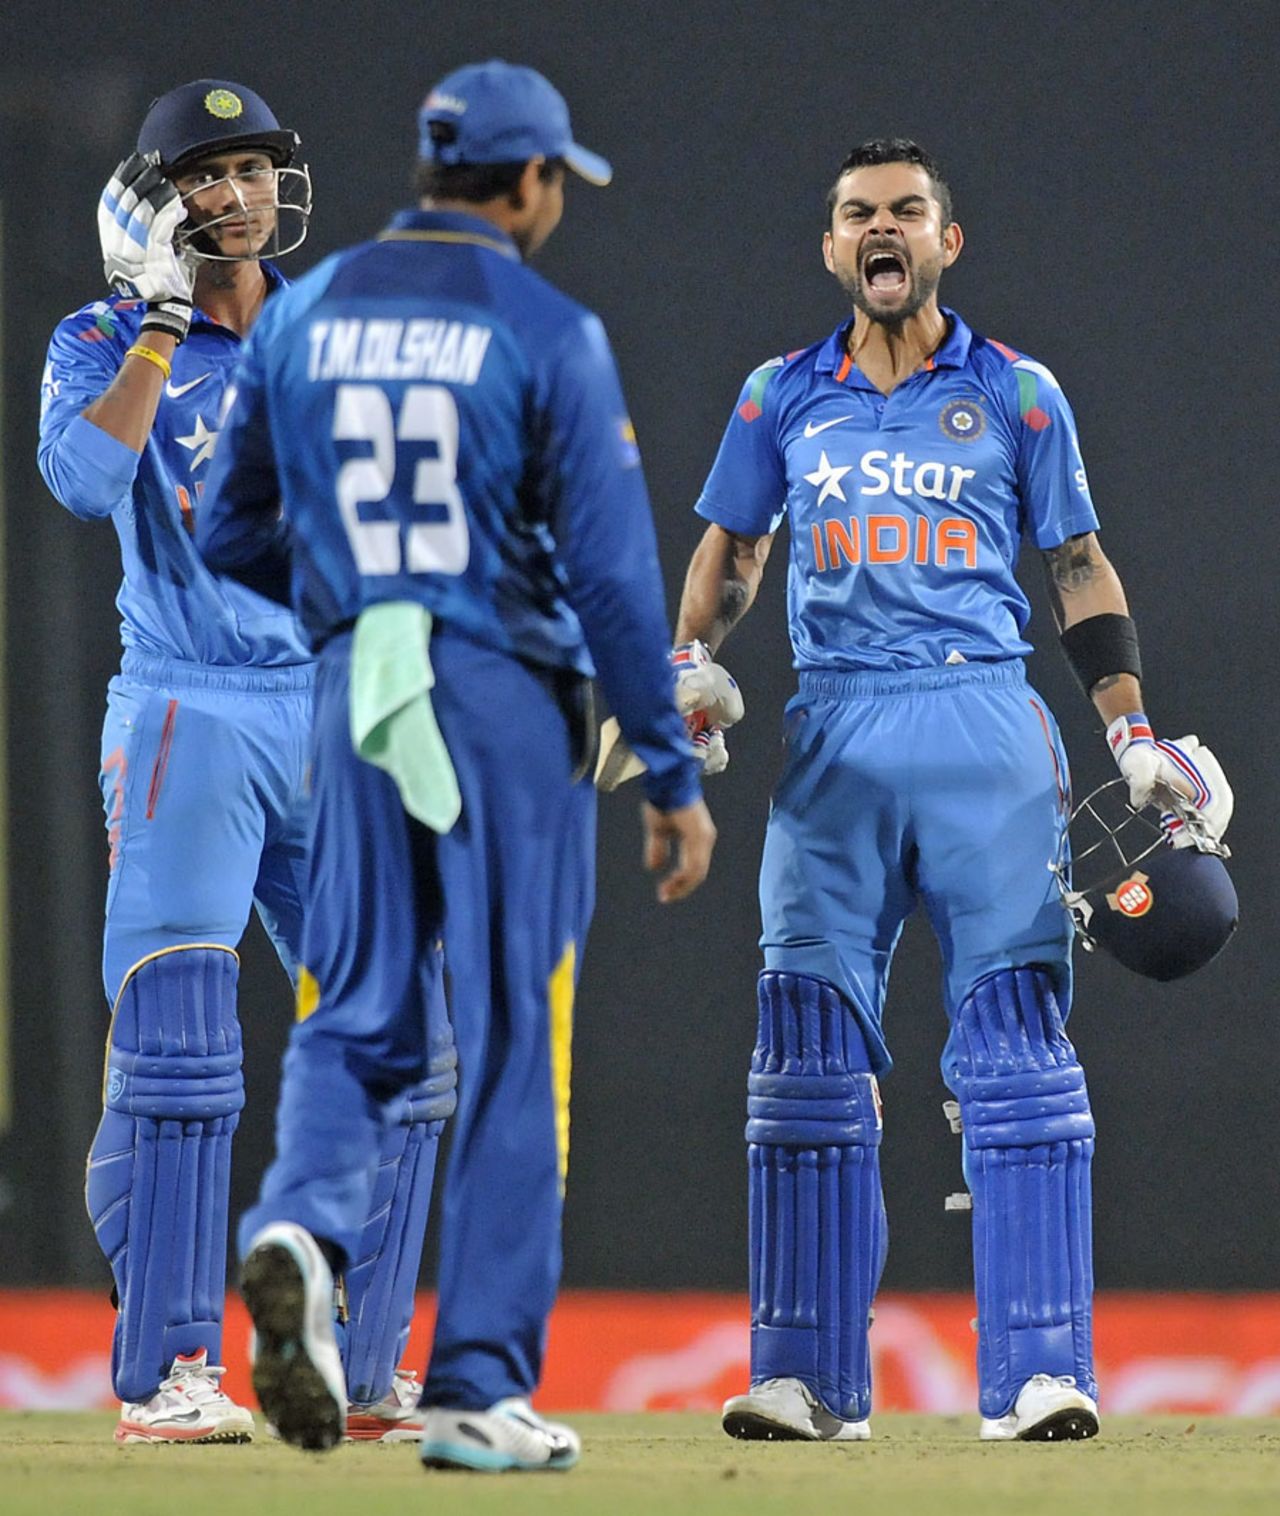 Virat Kohli celebrates India's win, India v Sri Lanka, 5th ODI, Ranchi, November 16, 2014